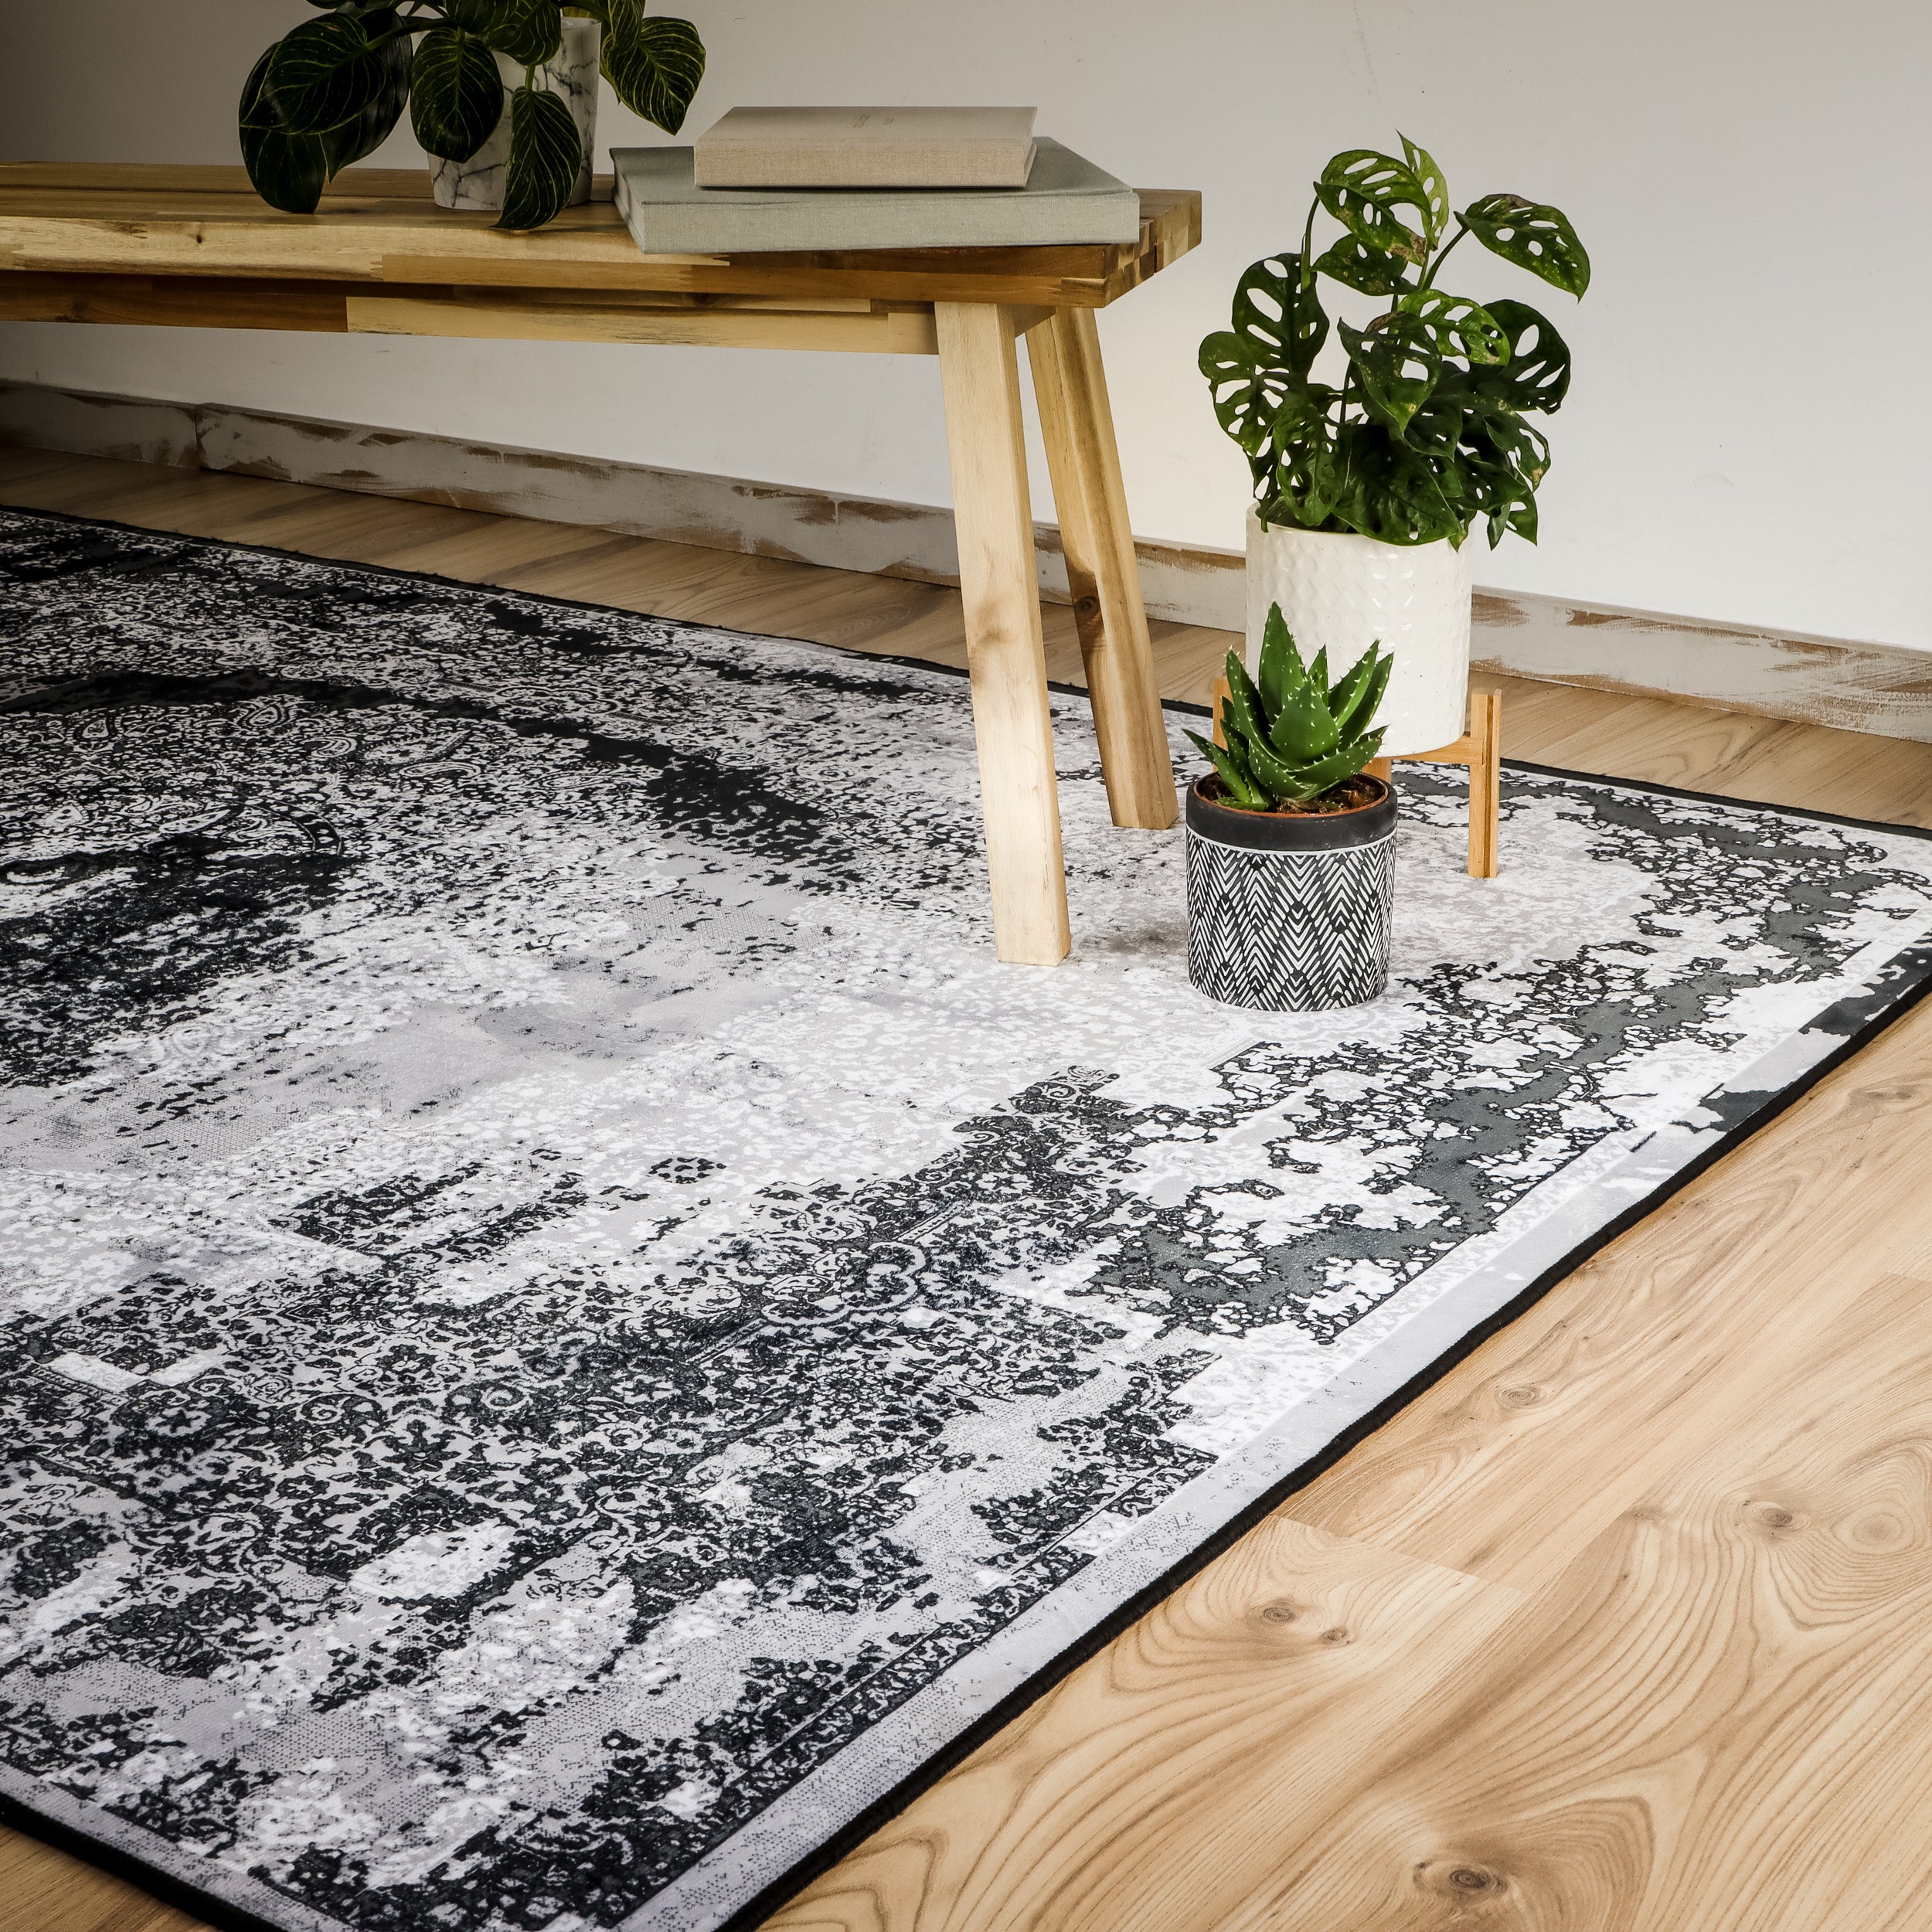 My Tampa 134 grey Teppich: Stilvolles Design, praktische Funktionalität für dein Zuhause